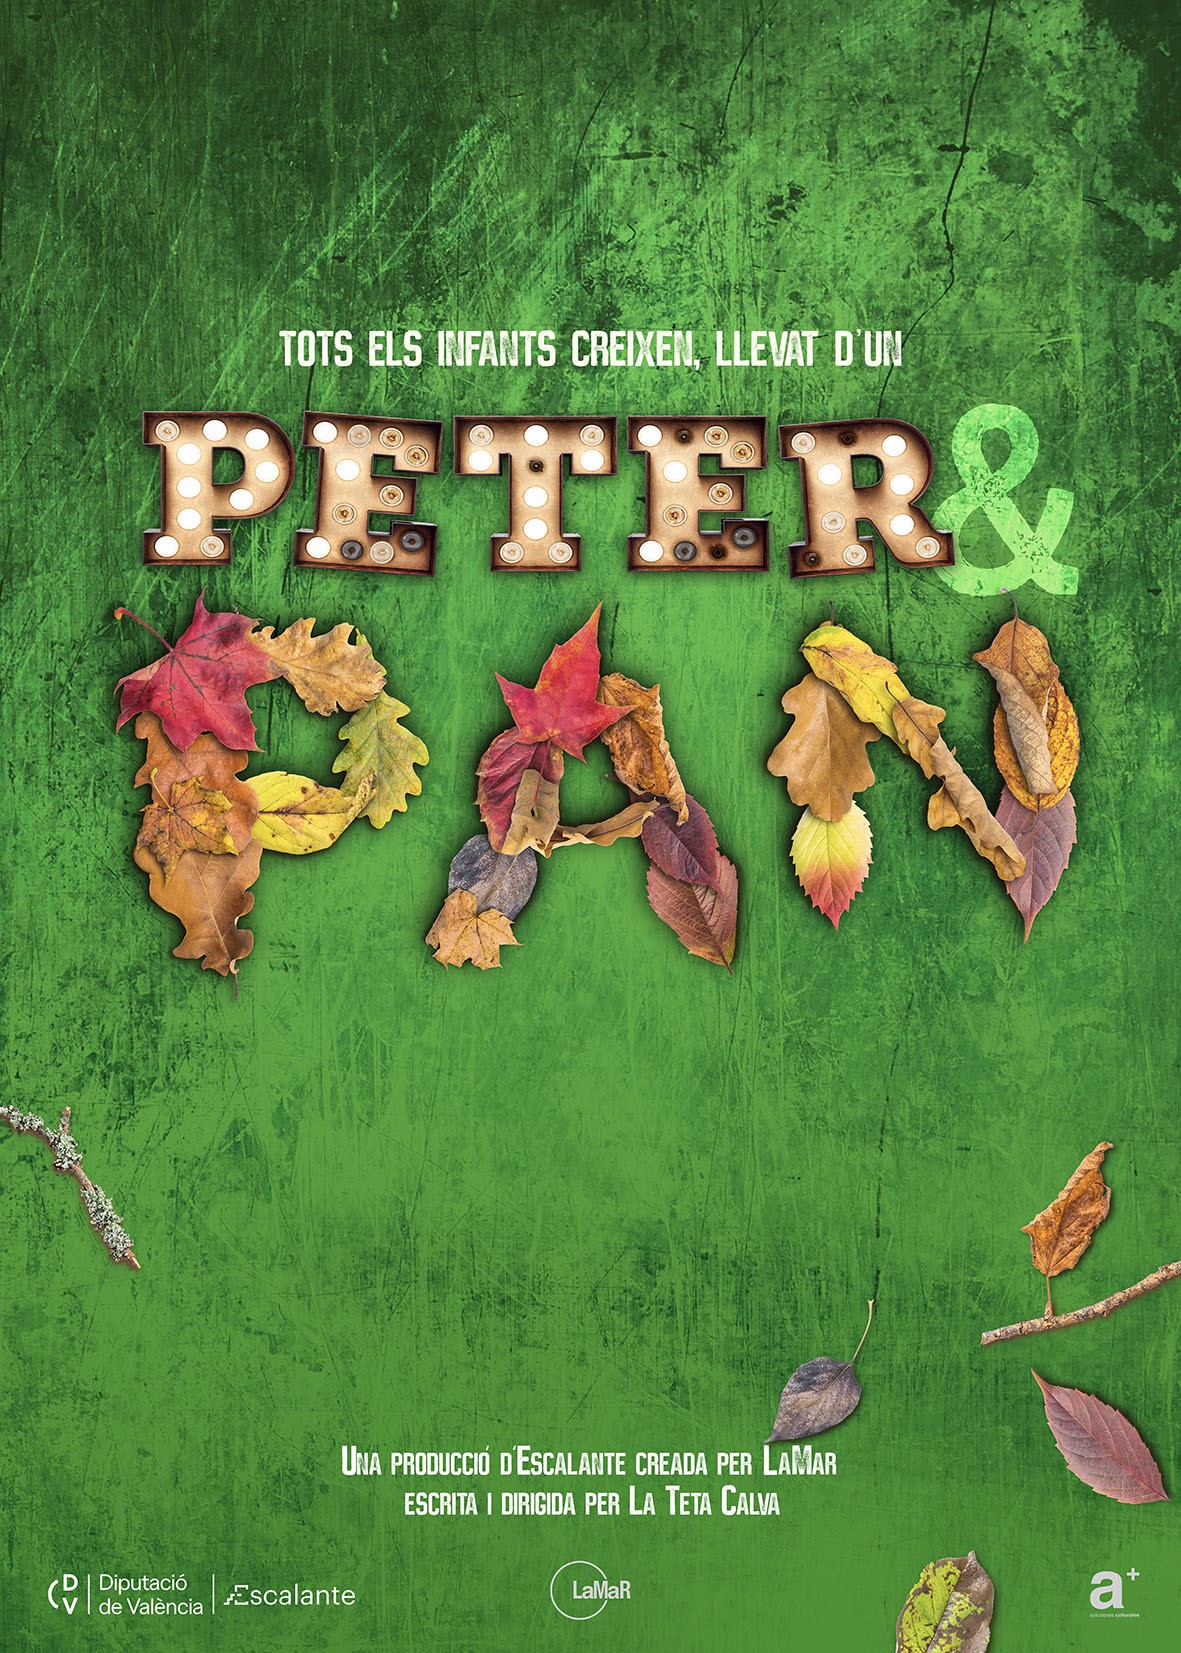 El Escalante invita a ilusionarse y perder el miedo a envejecer con el estreno de ‘Peter&Pan’